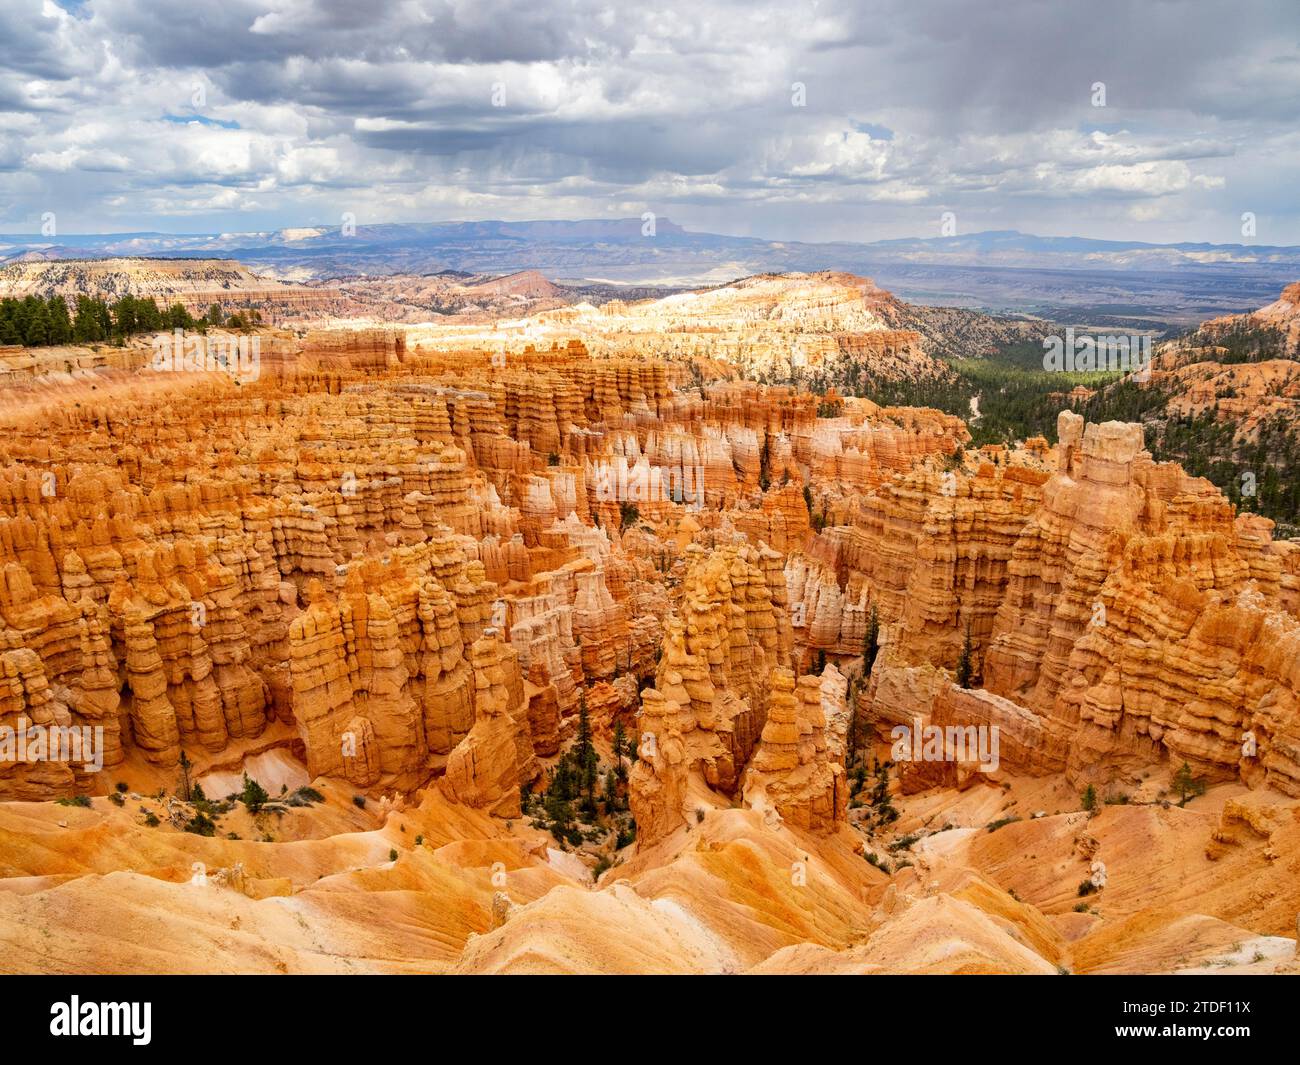 Formations rocheuses rouges connues sous le nom de hoodoos dans le parc national de Bryce Canyon, Utah, États-Unis d'Amérique, Amérique du Nord Banque D'Images